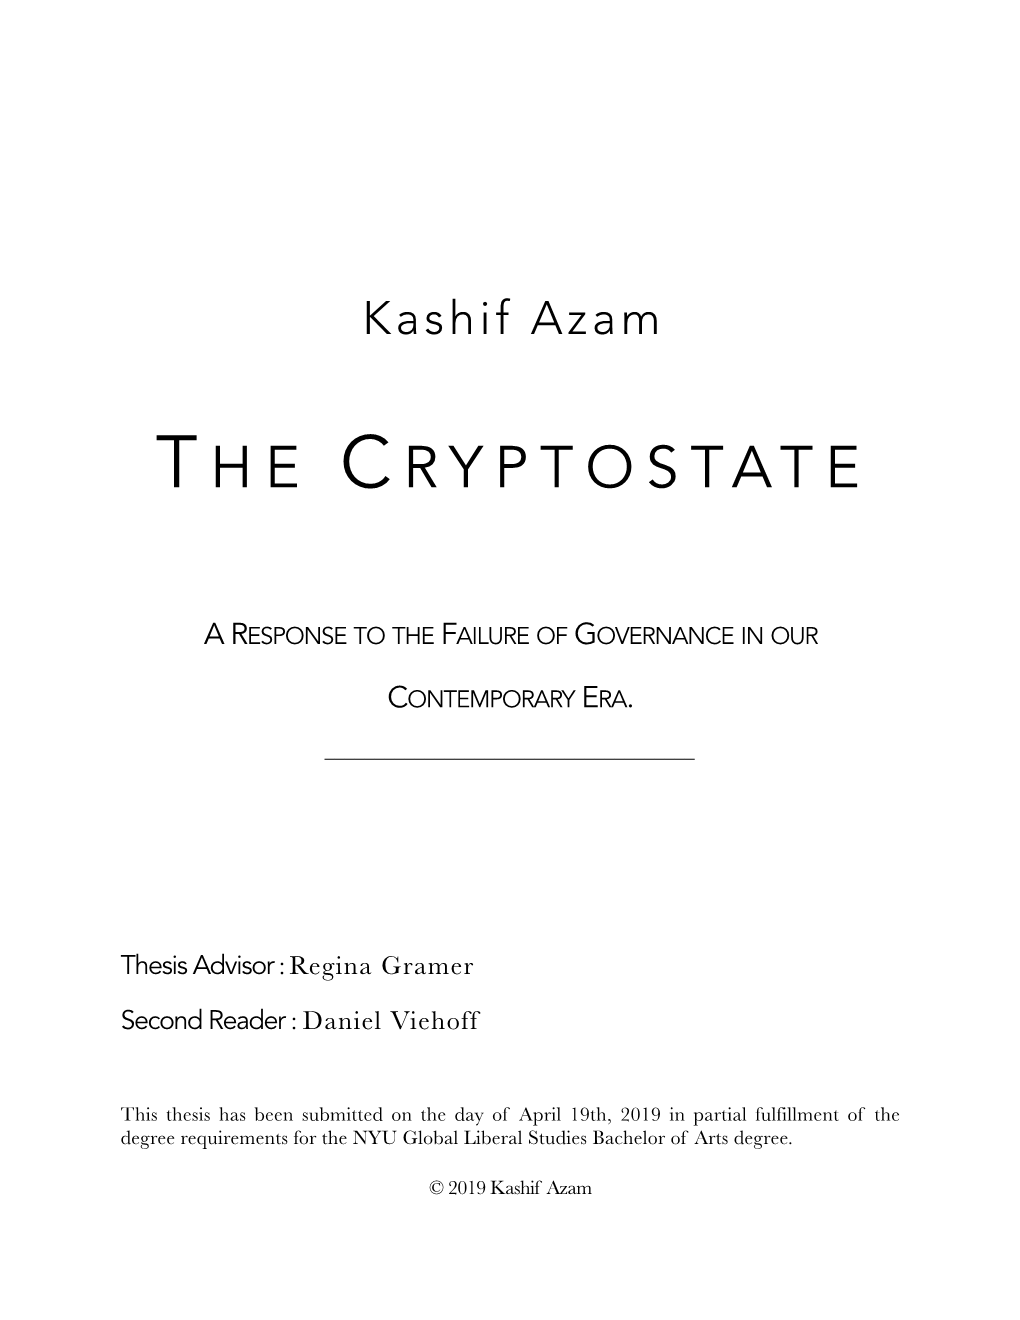 Azam Senior Thesis [The Cryptostate]